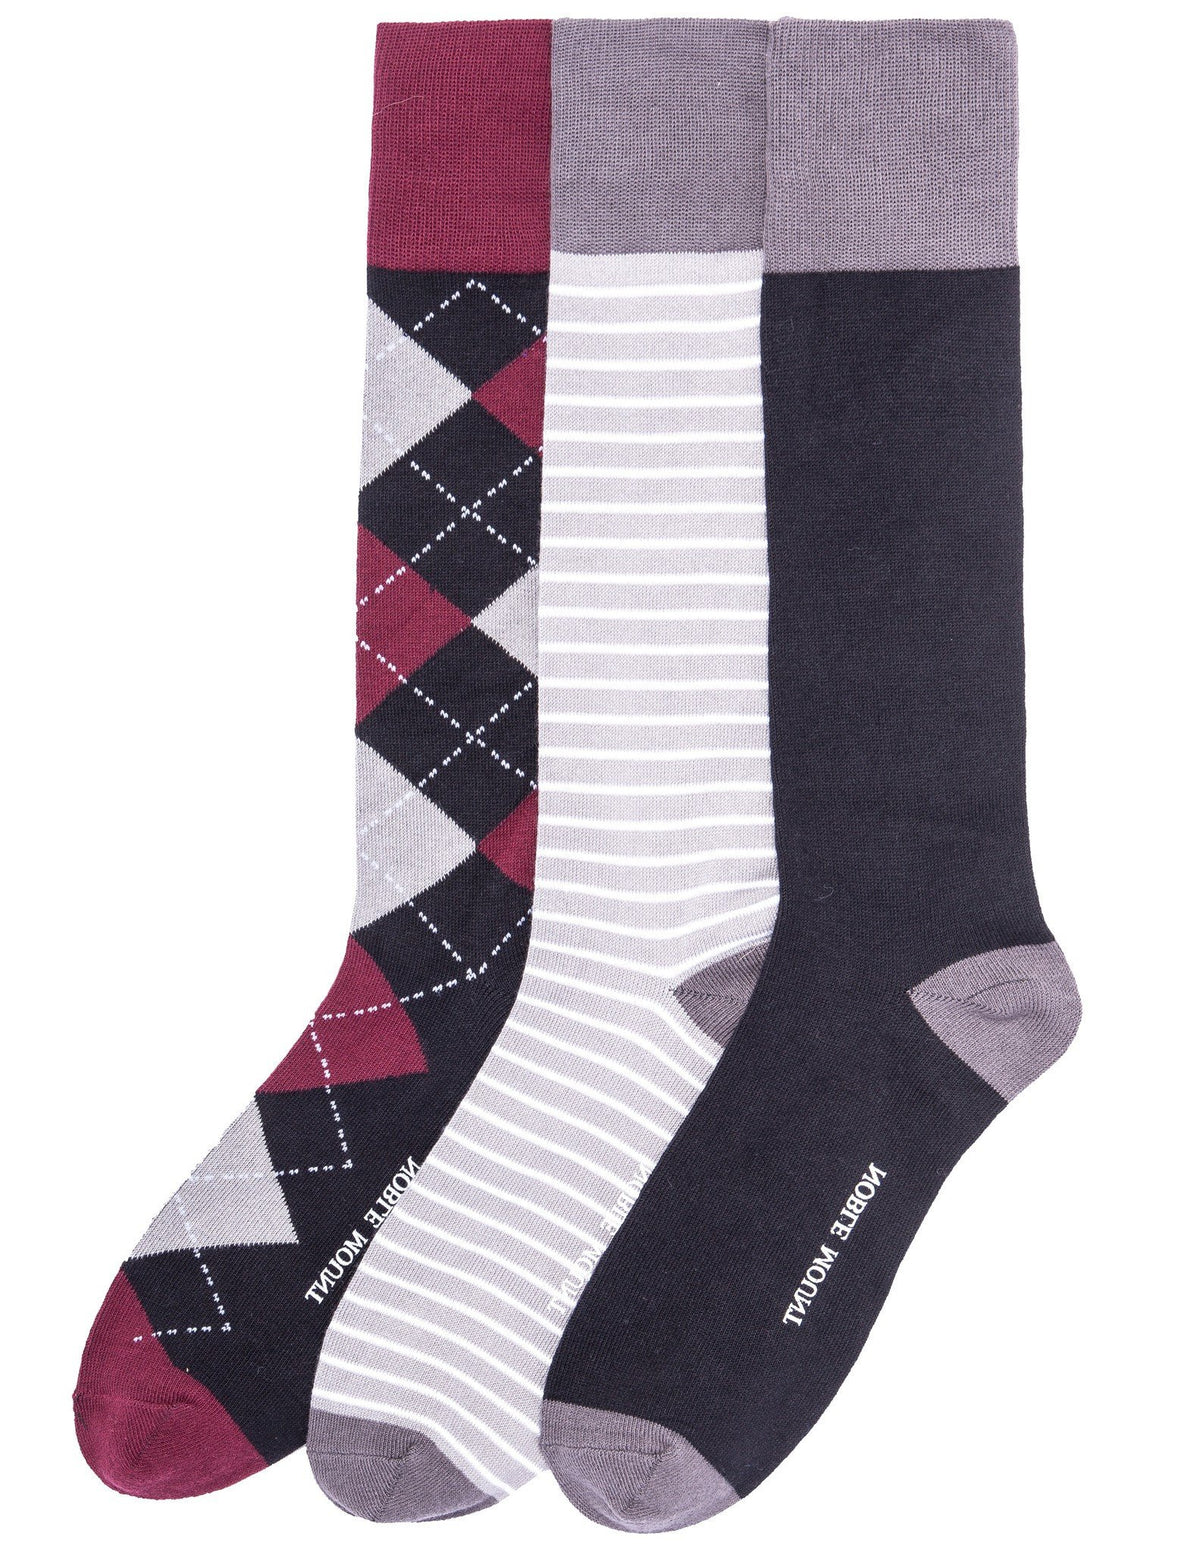 Men's Combed Cotton Dress Socks 3-Pack - Set C3